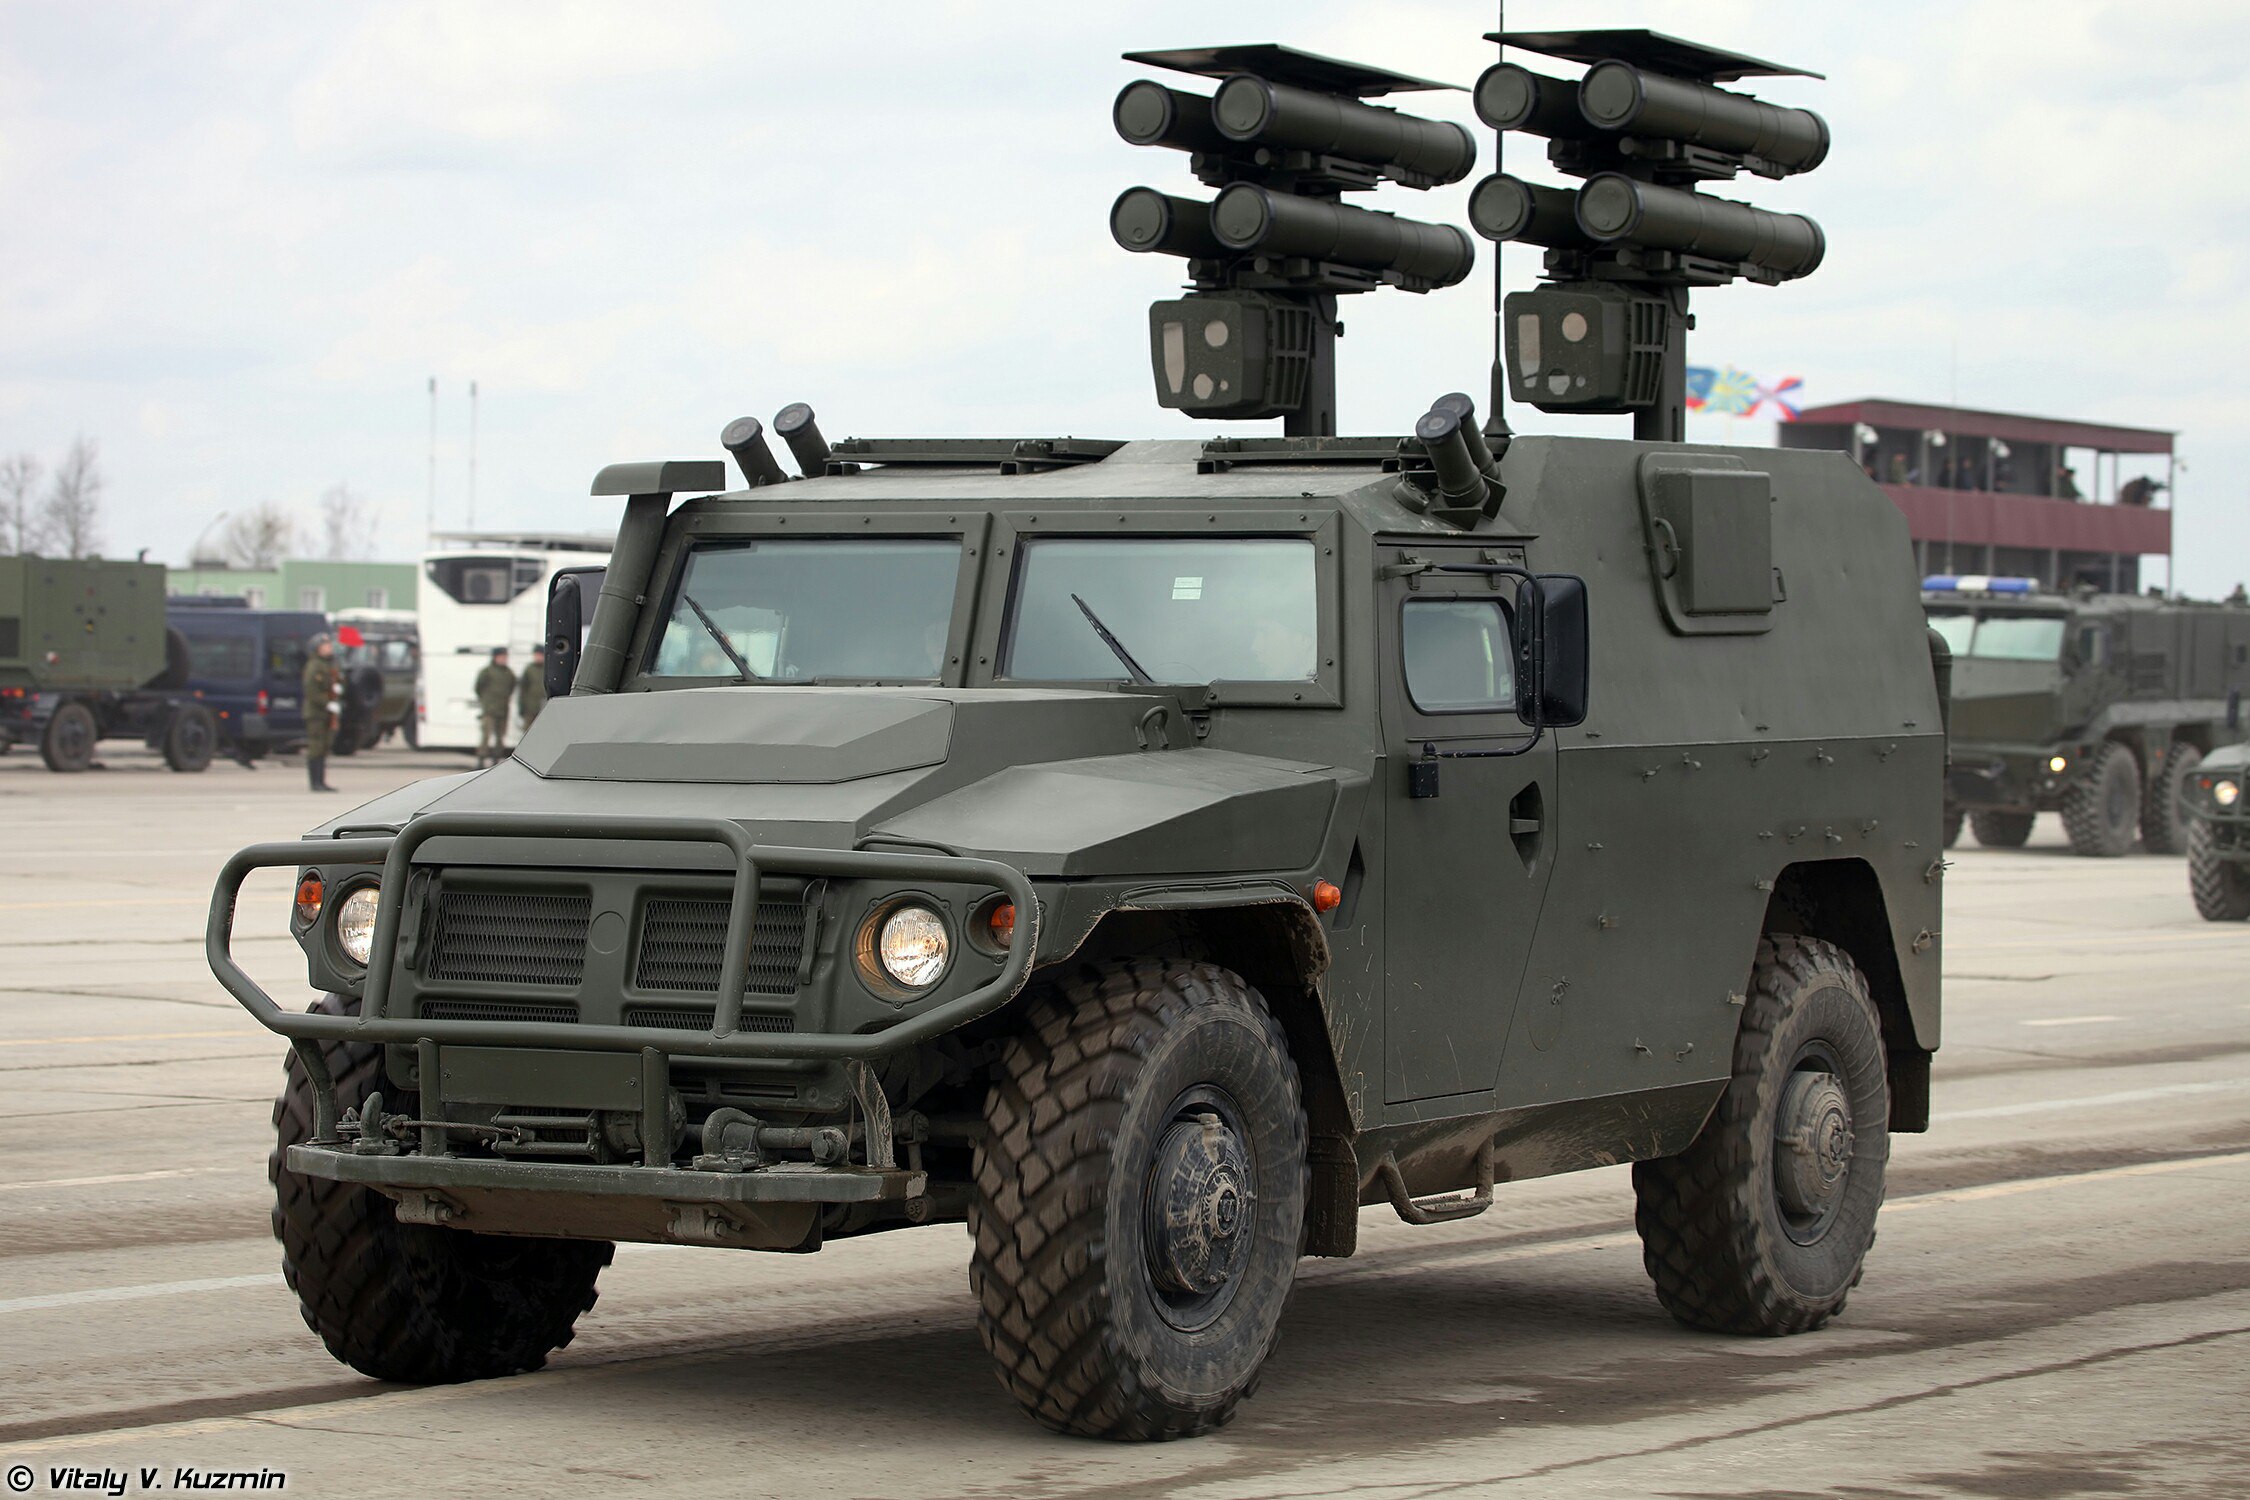 GAZ Tiger-M with Kornet-D ATGM [OS][1200x800] : r/MilitaryPorn